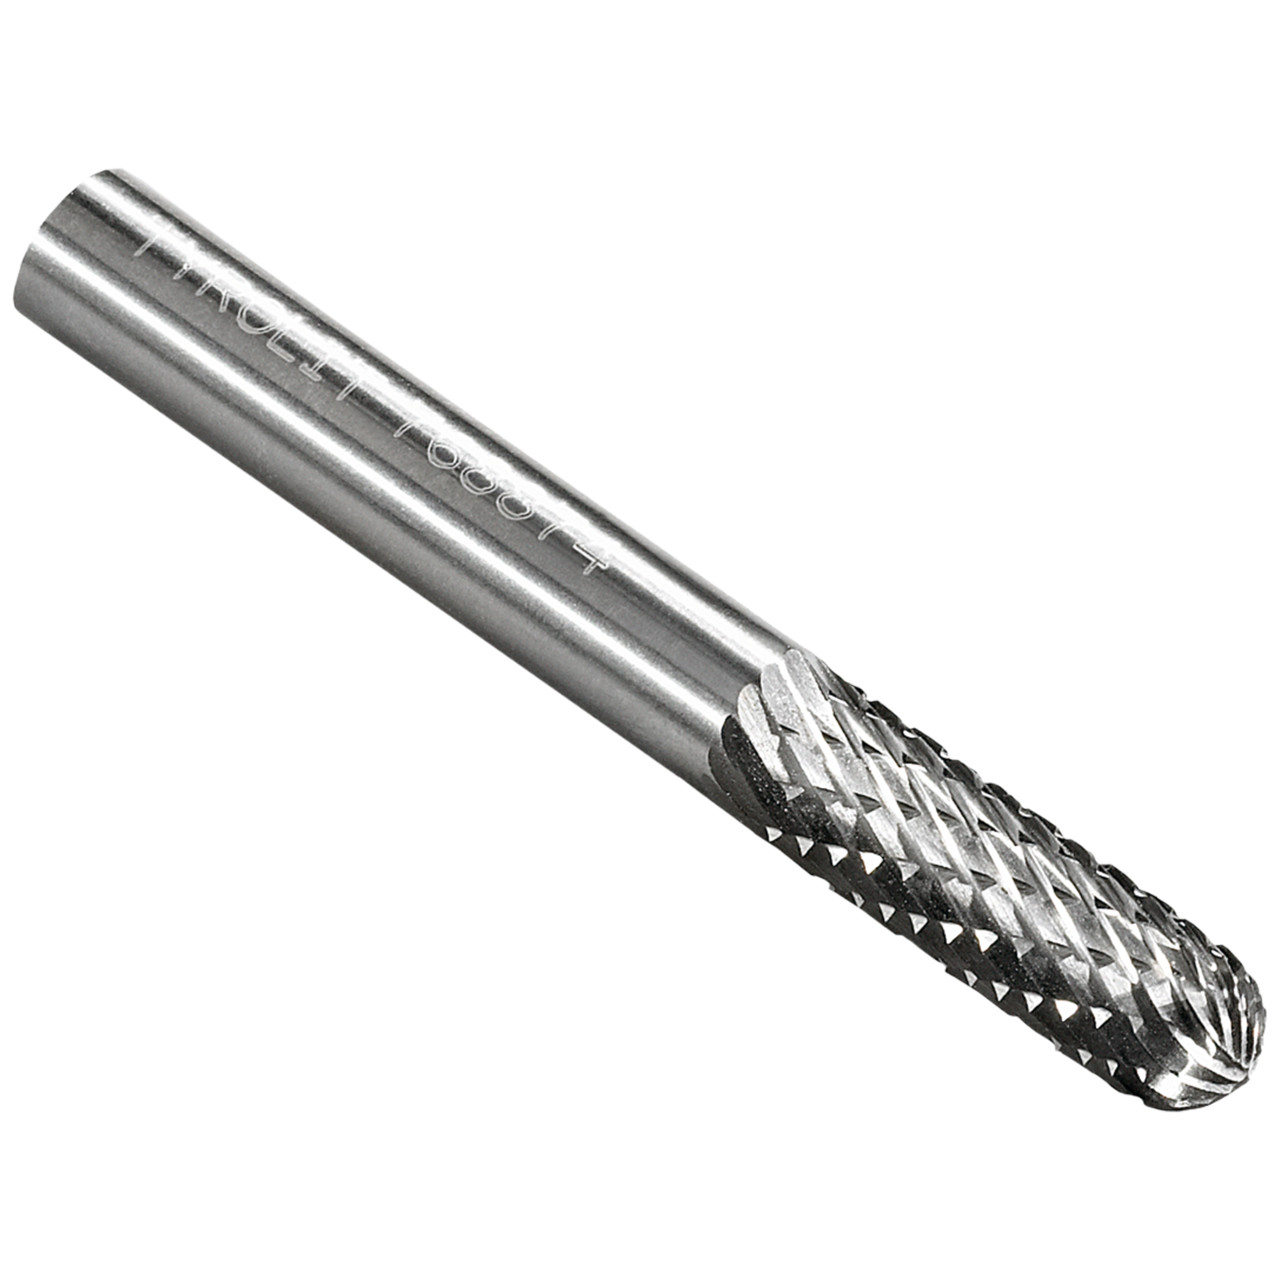 TYROLIT hardmetalen frees DxT-SxL 10x19-6x65 Voor gietijzer, staal en roestvrij staal, vorm: 52WRC - cilindrisch, Art. 768881